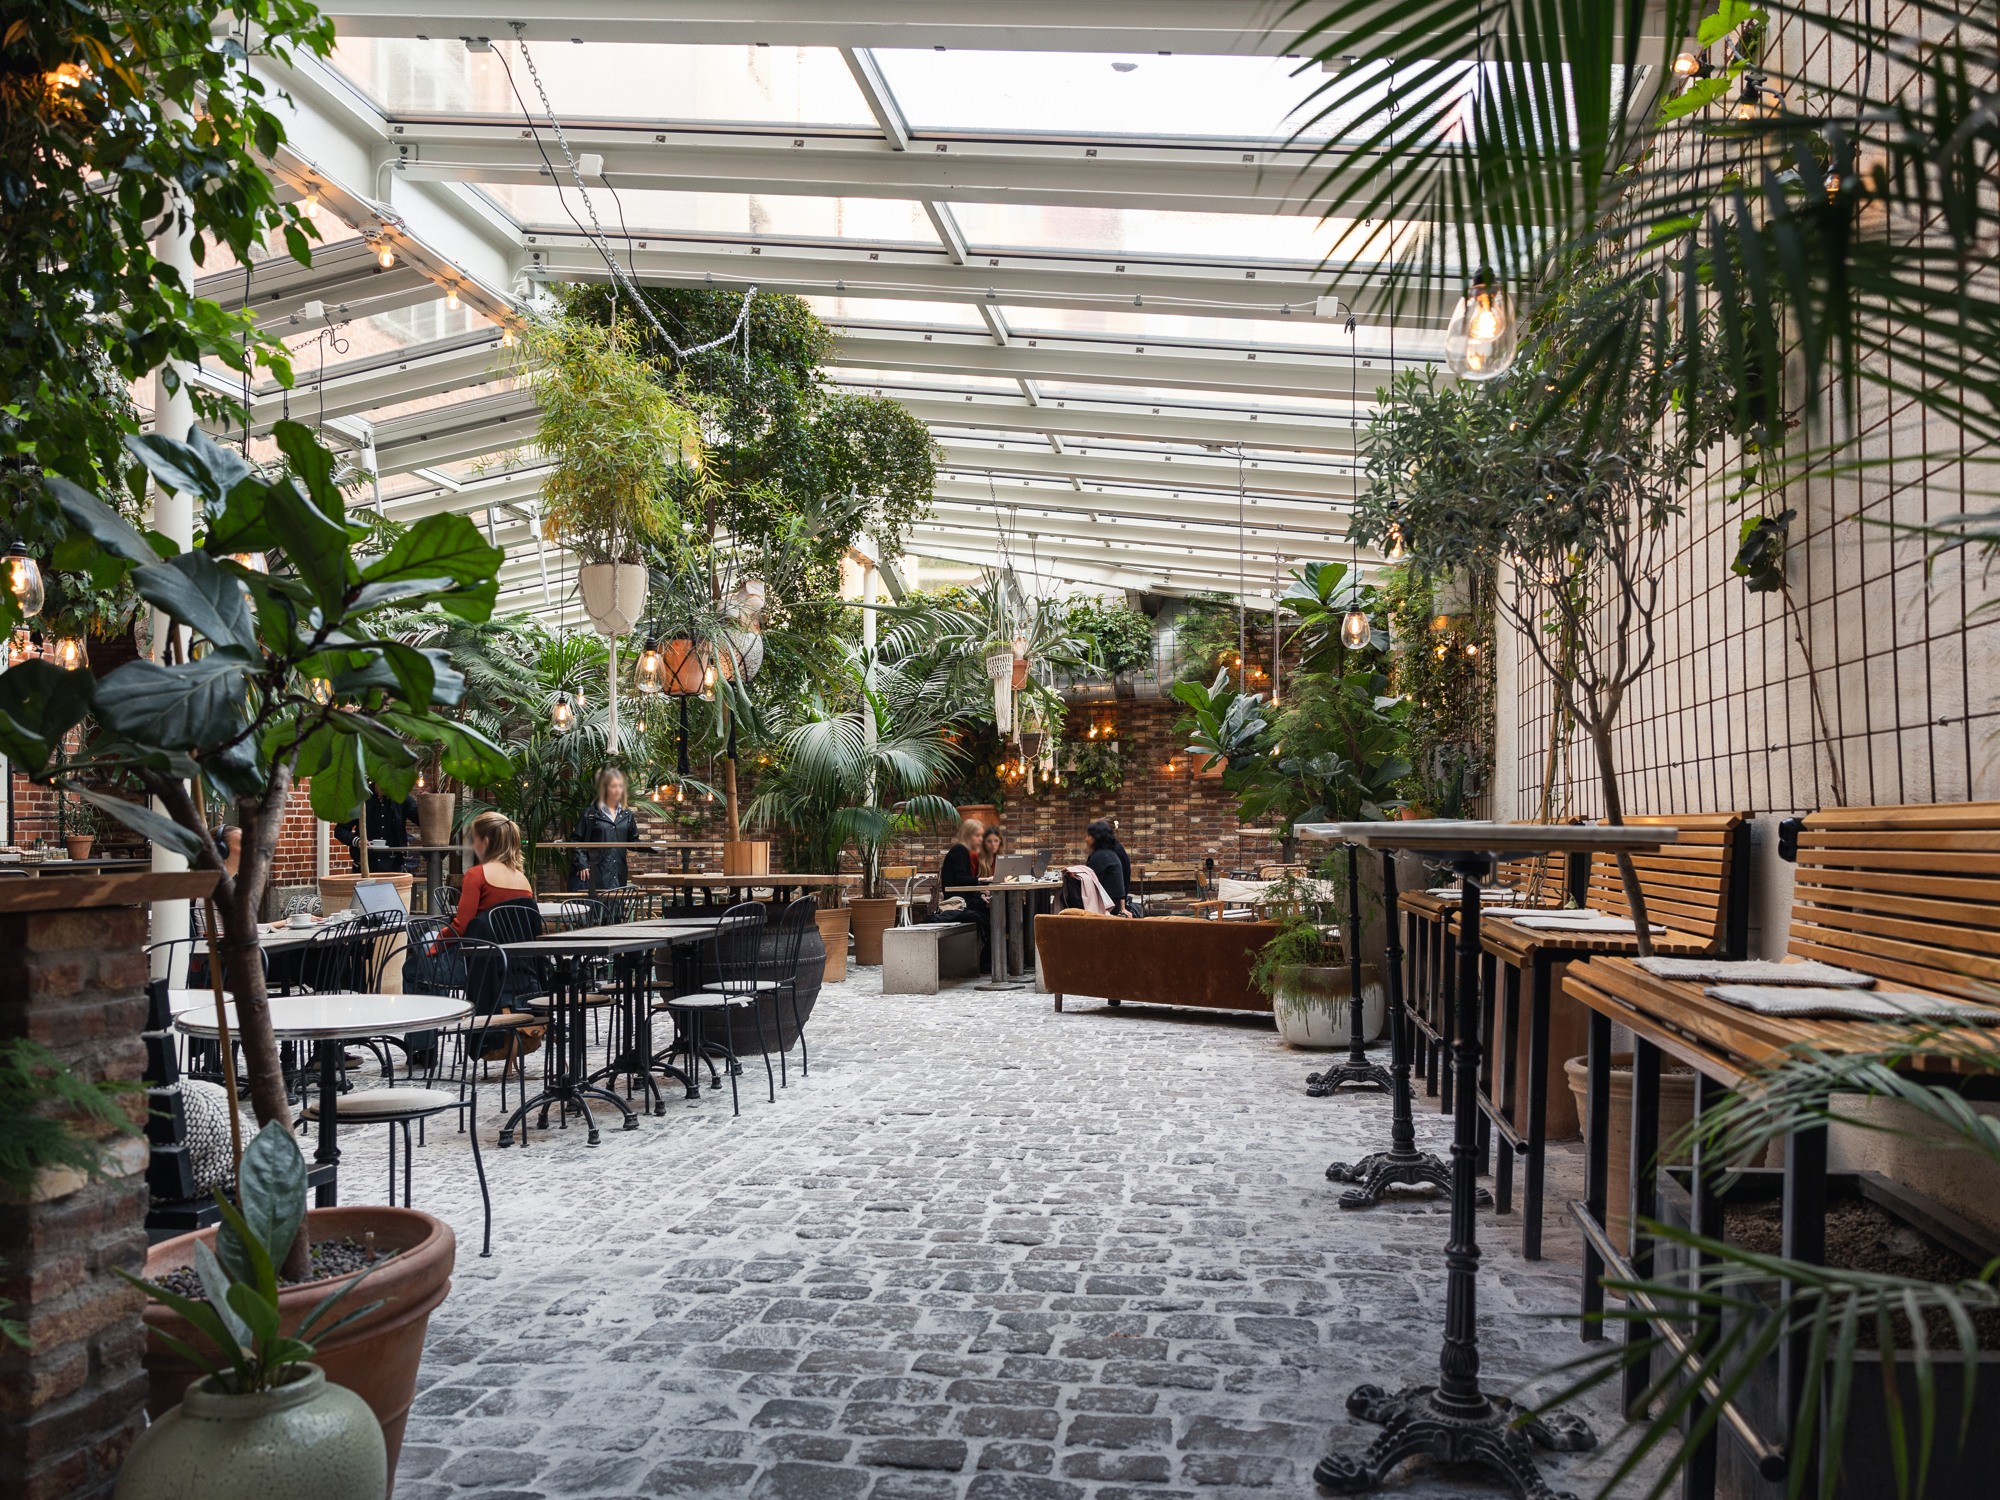 Café med glastak och växter som hänger från taket.